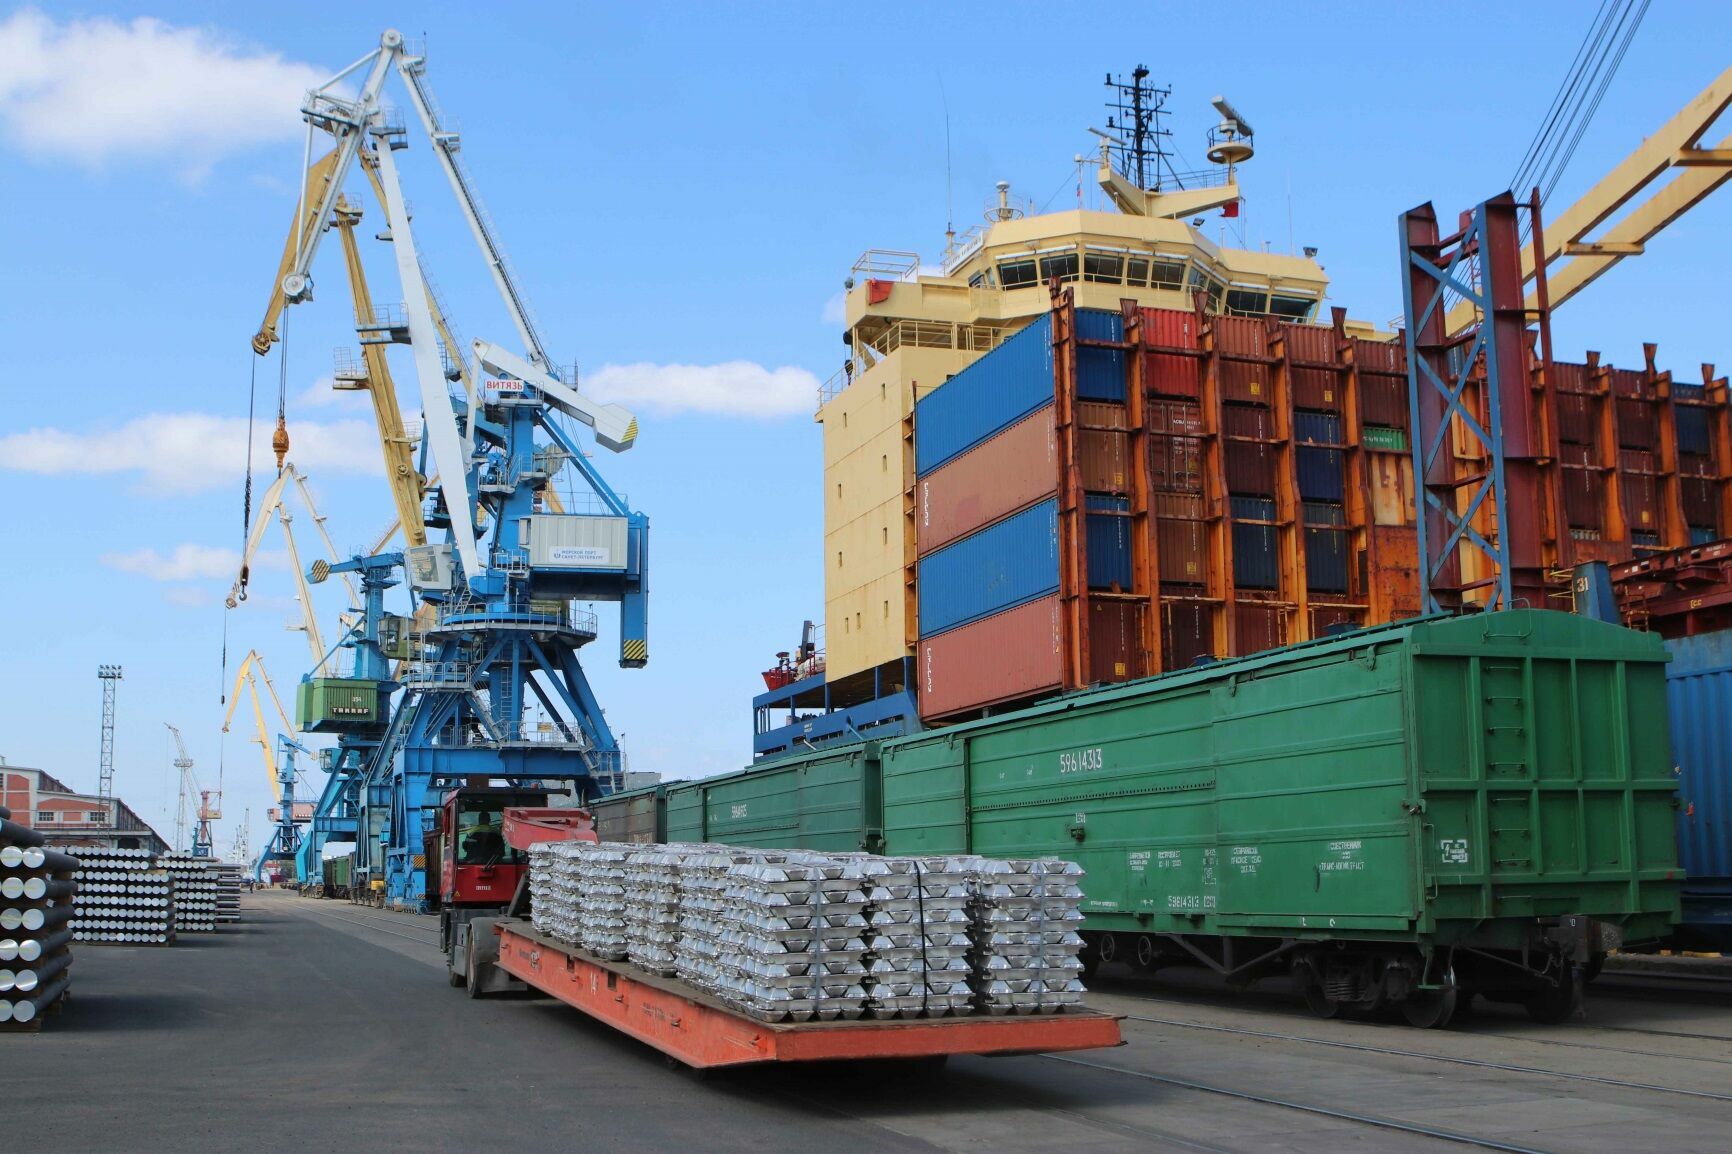 Через три российских порта разрешили провозить транзитом санкционную продукцию